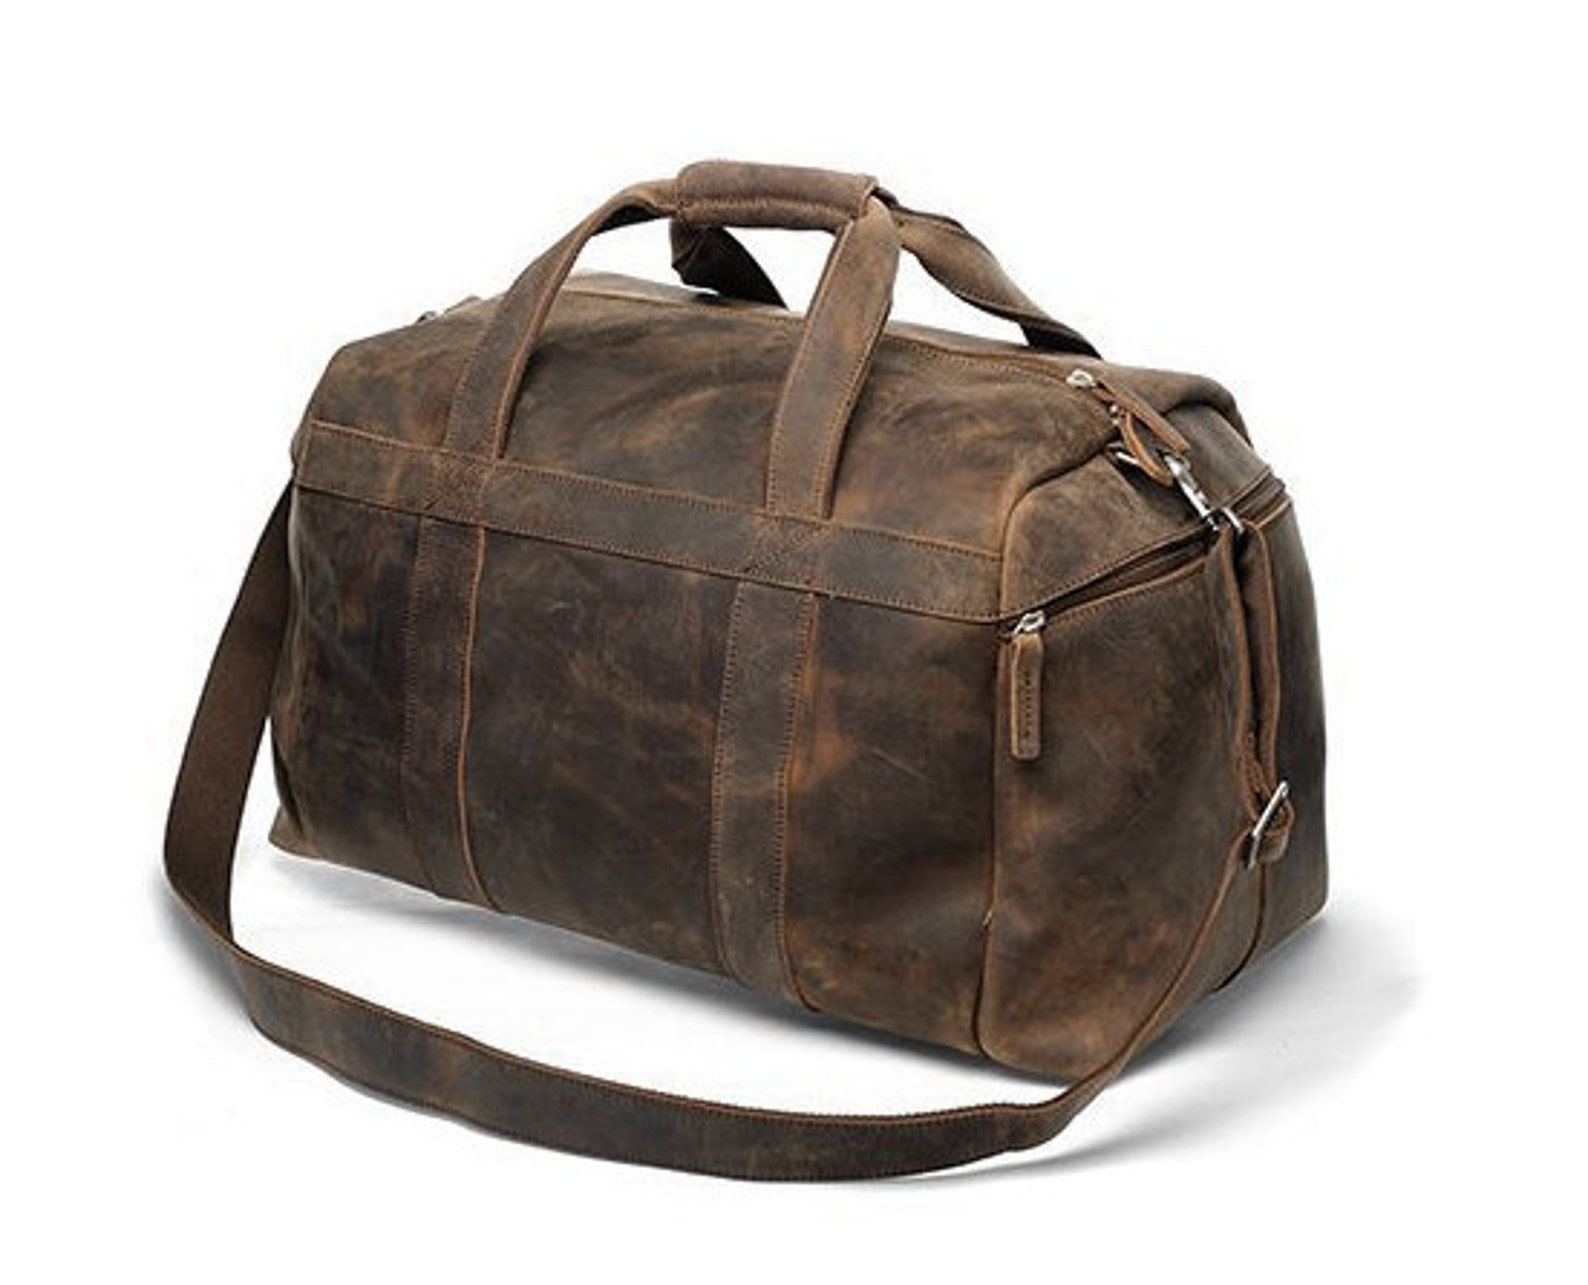 Handmade Buffalo Leather Gym Bag / Sports Bag / Duffel / - Etsy